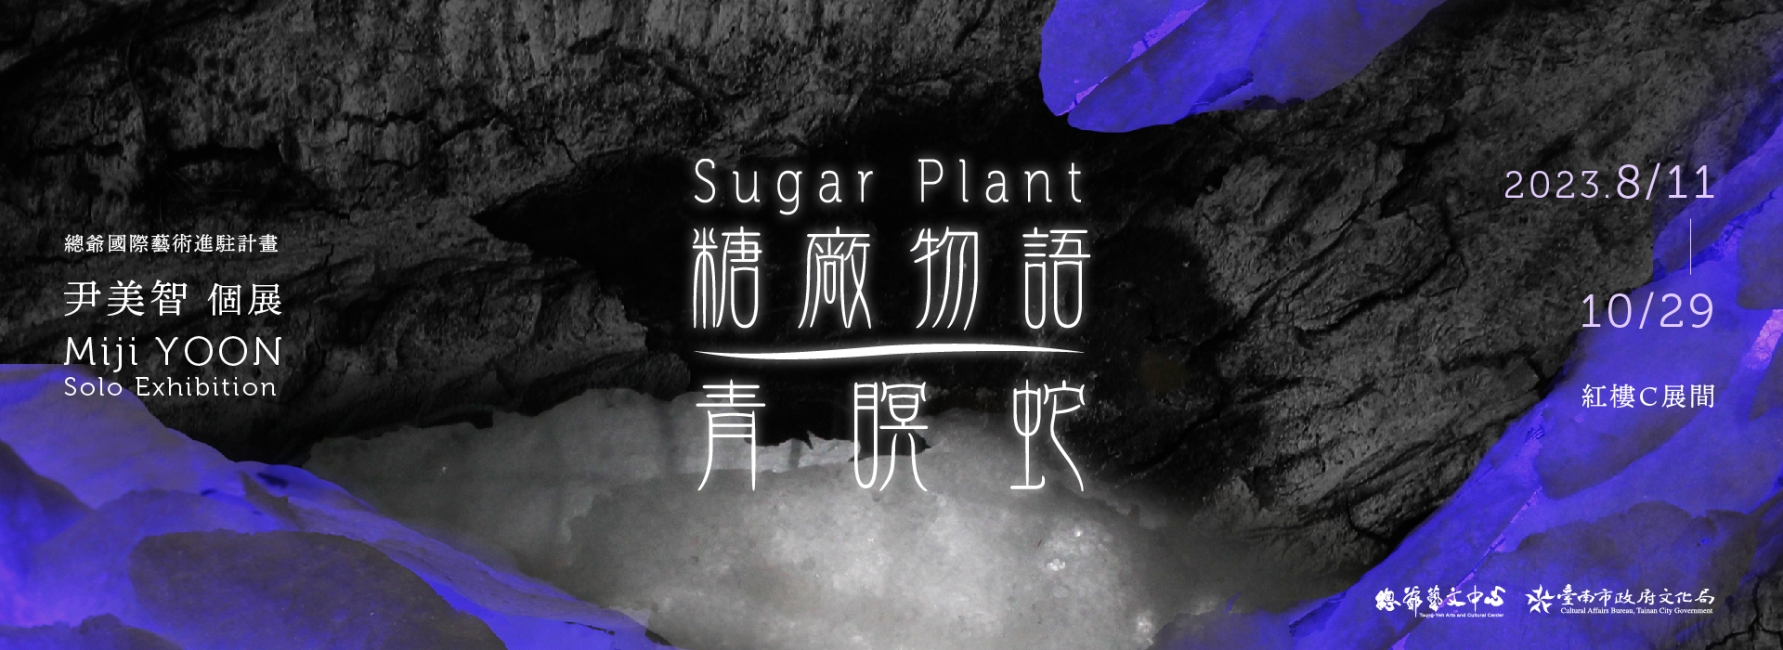 【駐村成果展】《糖廠物語-青瞑蛇》尹美智個展